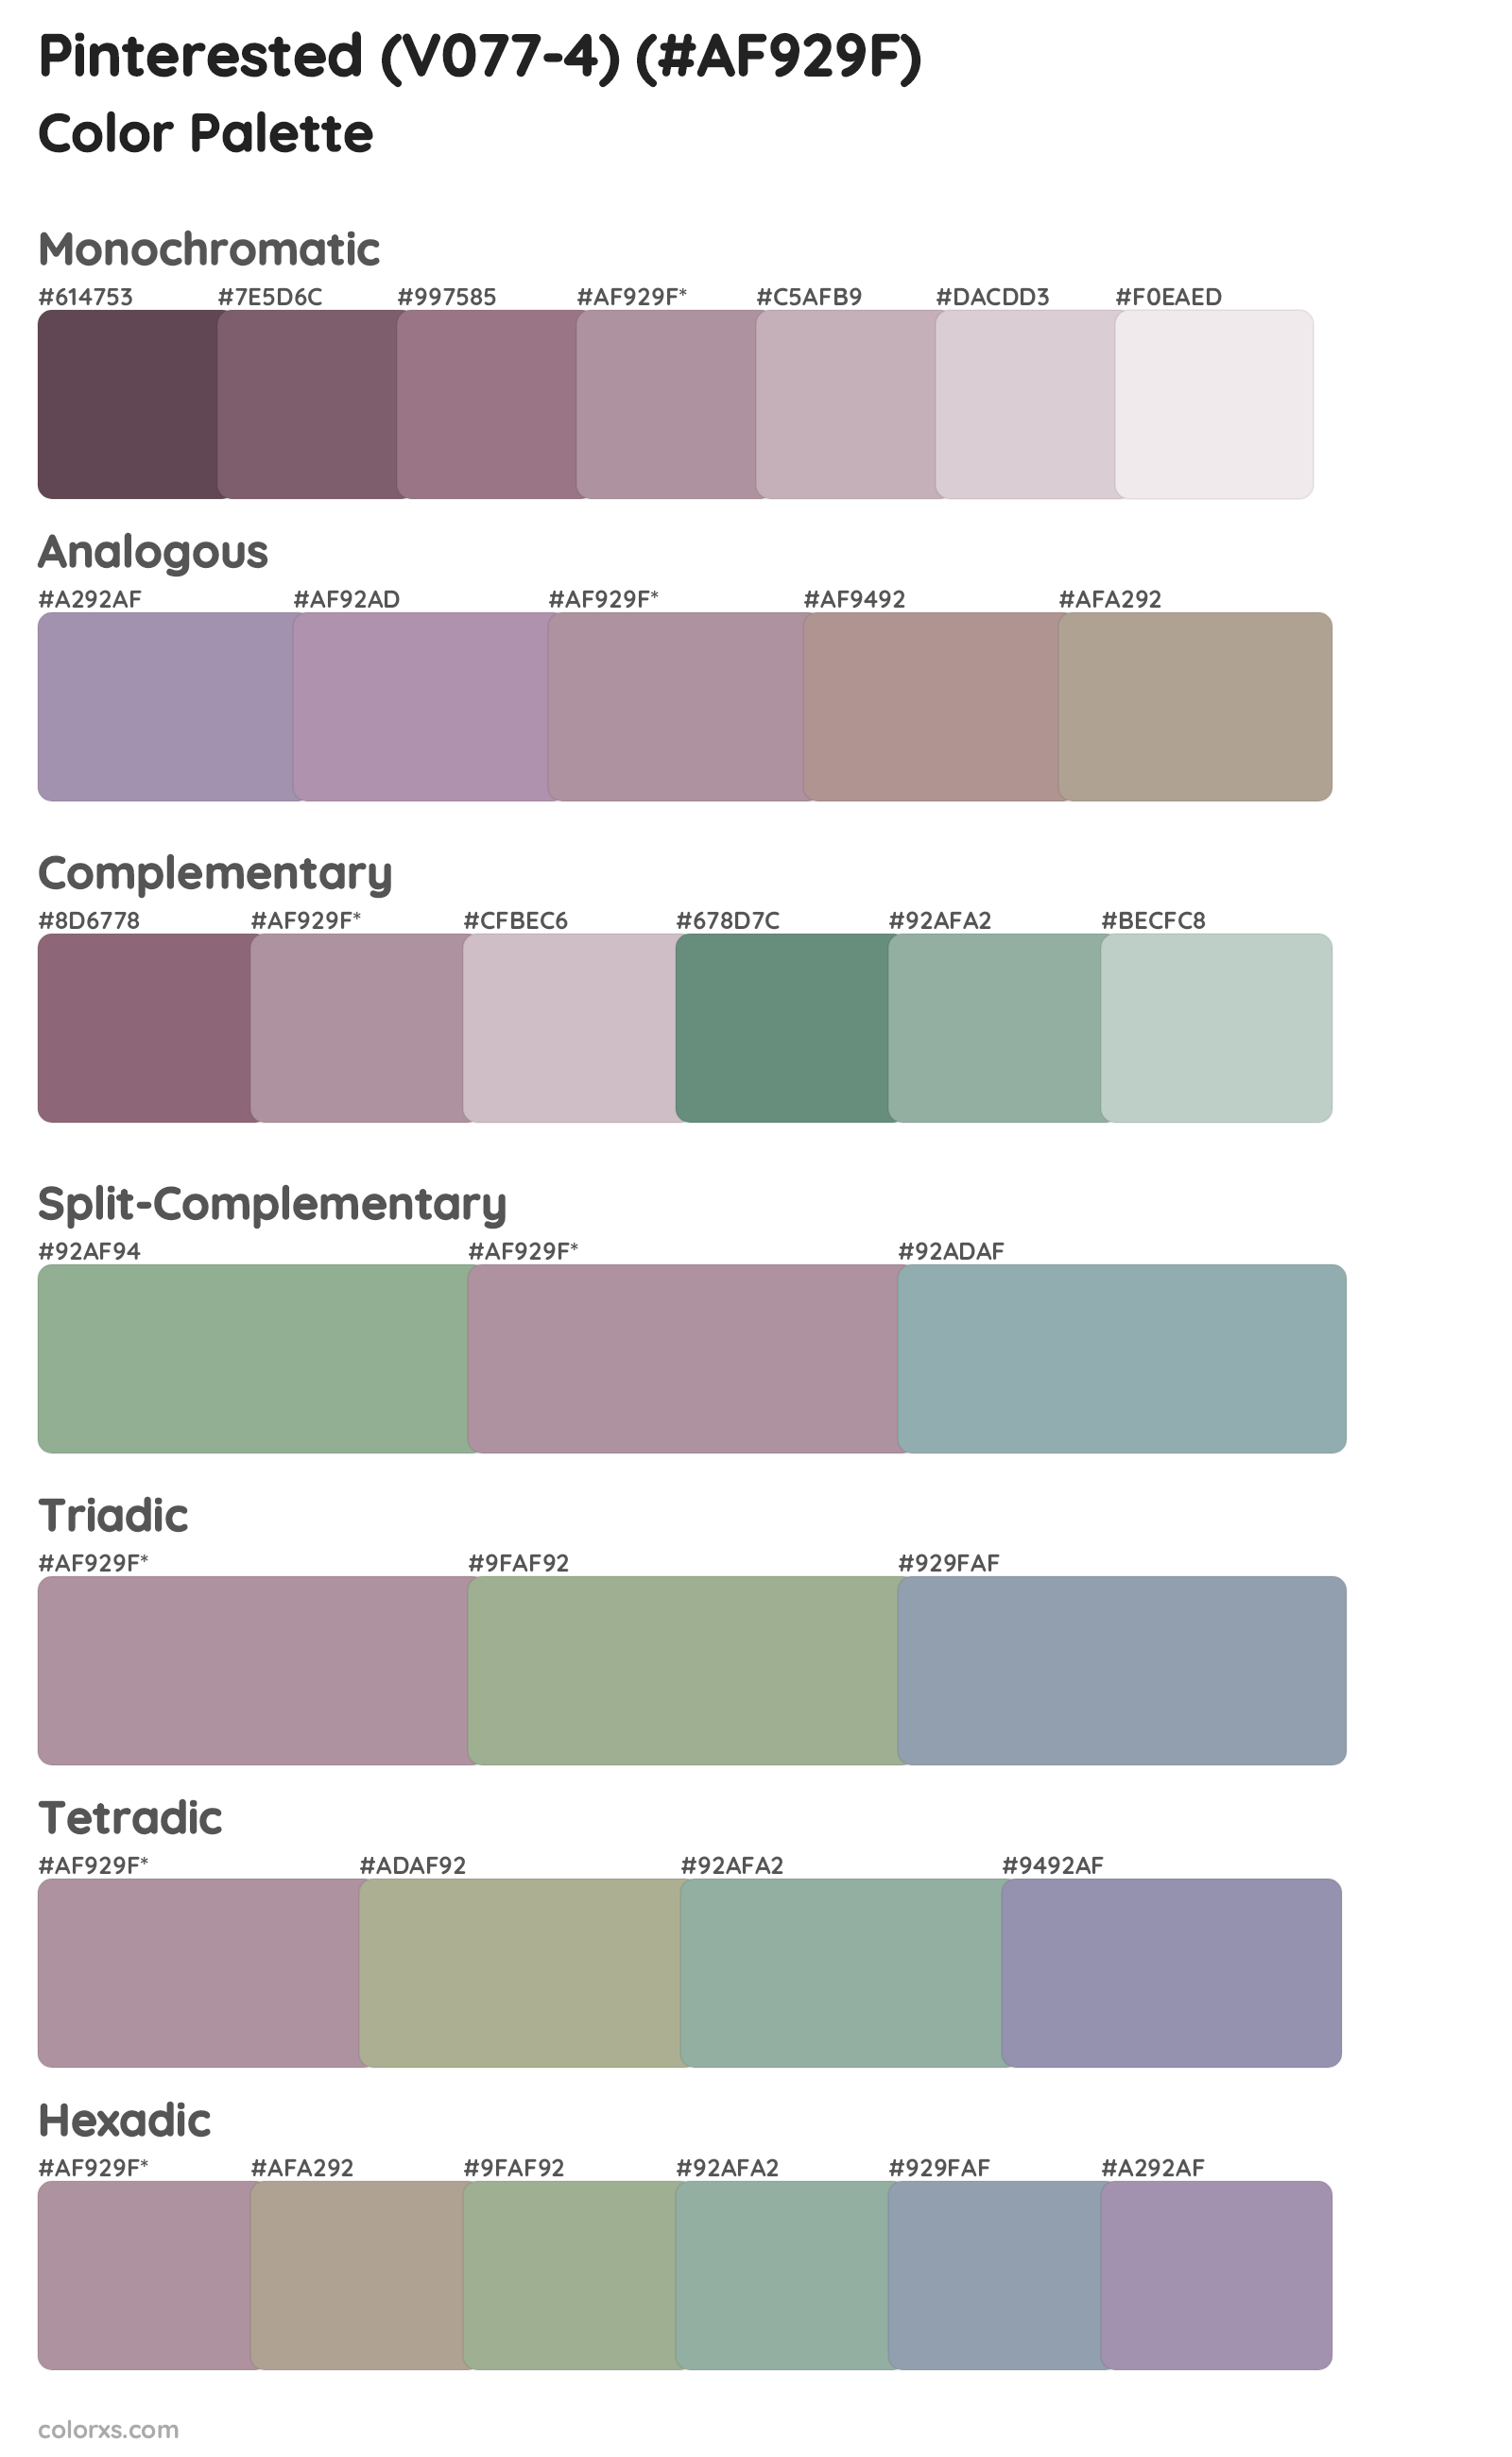 Pinterested (V077-4) Color Scheme Palettes